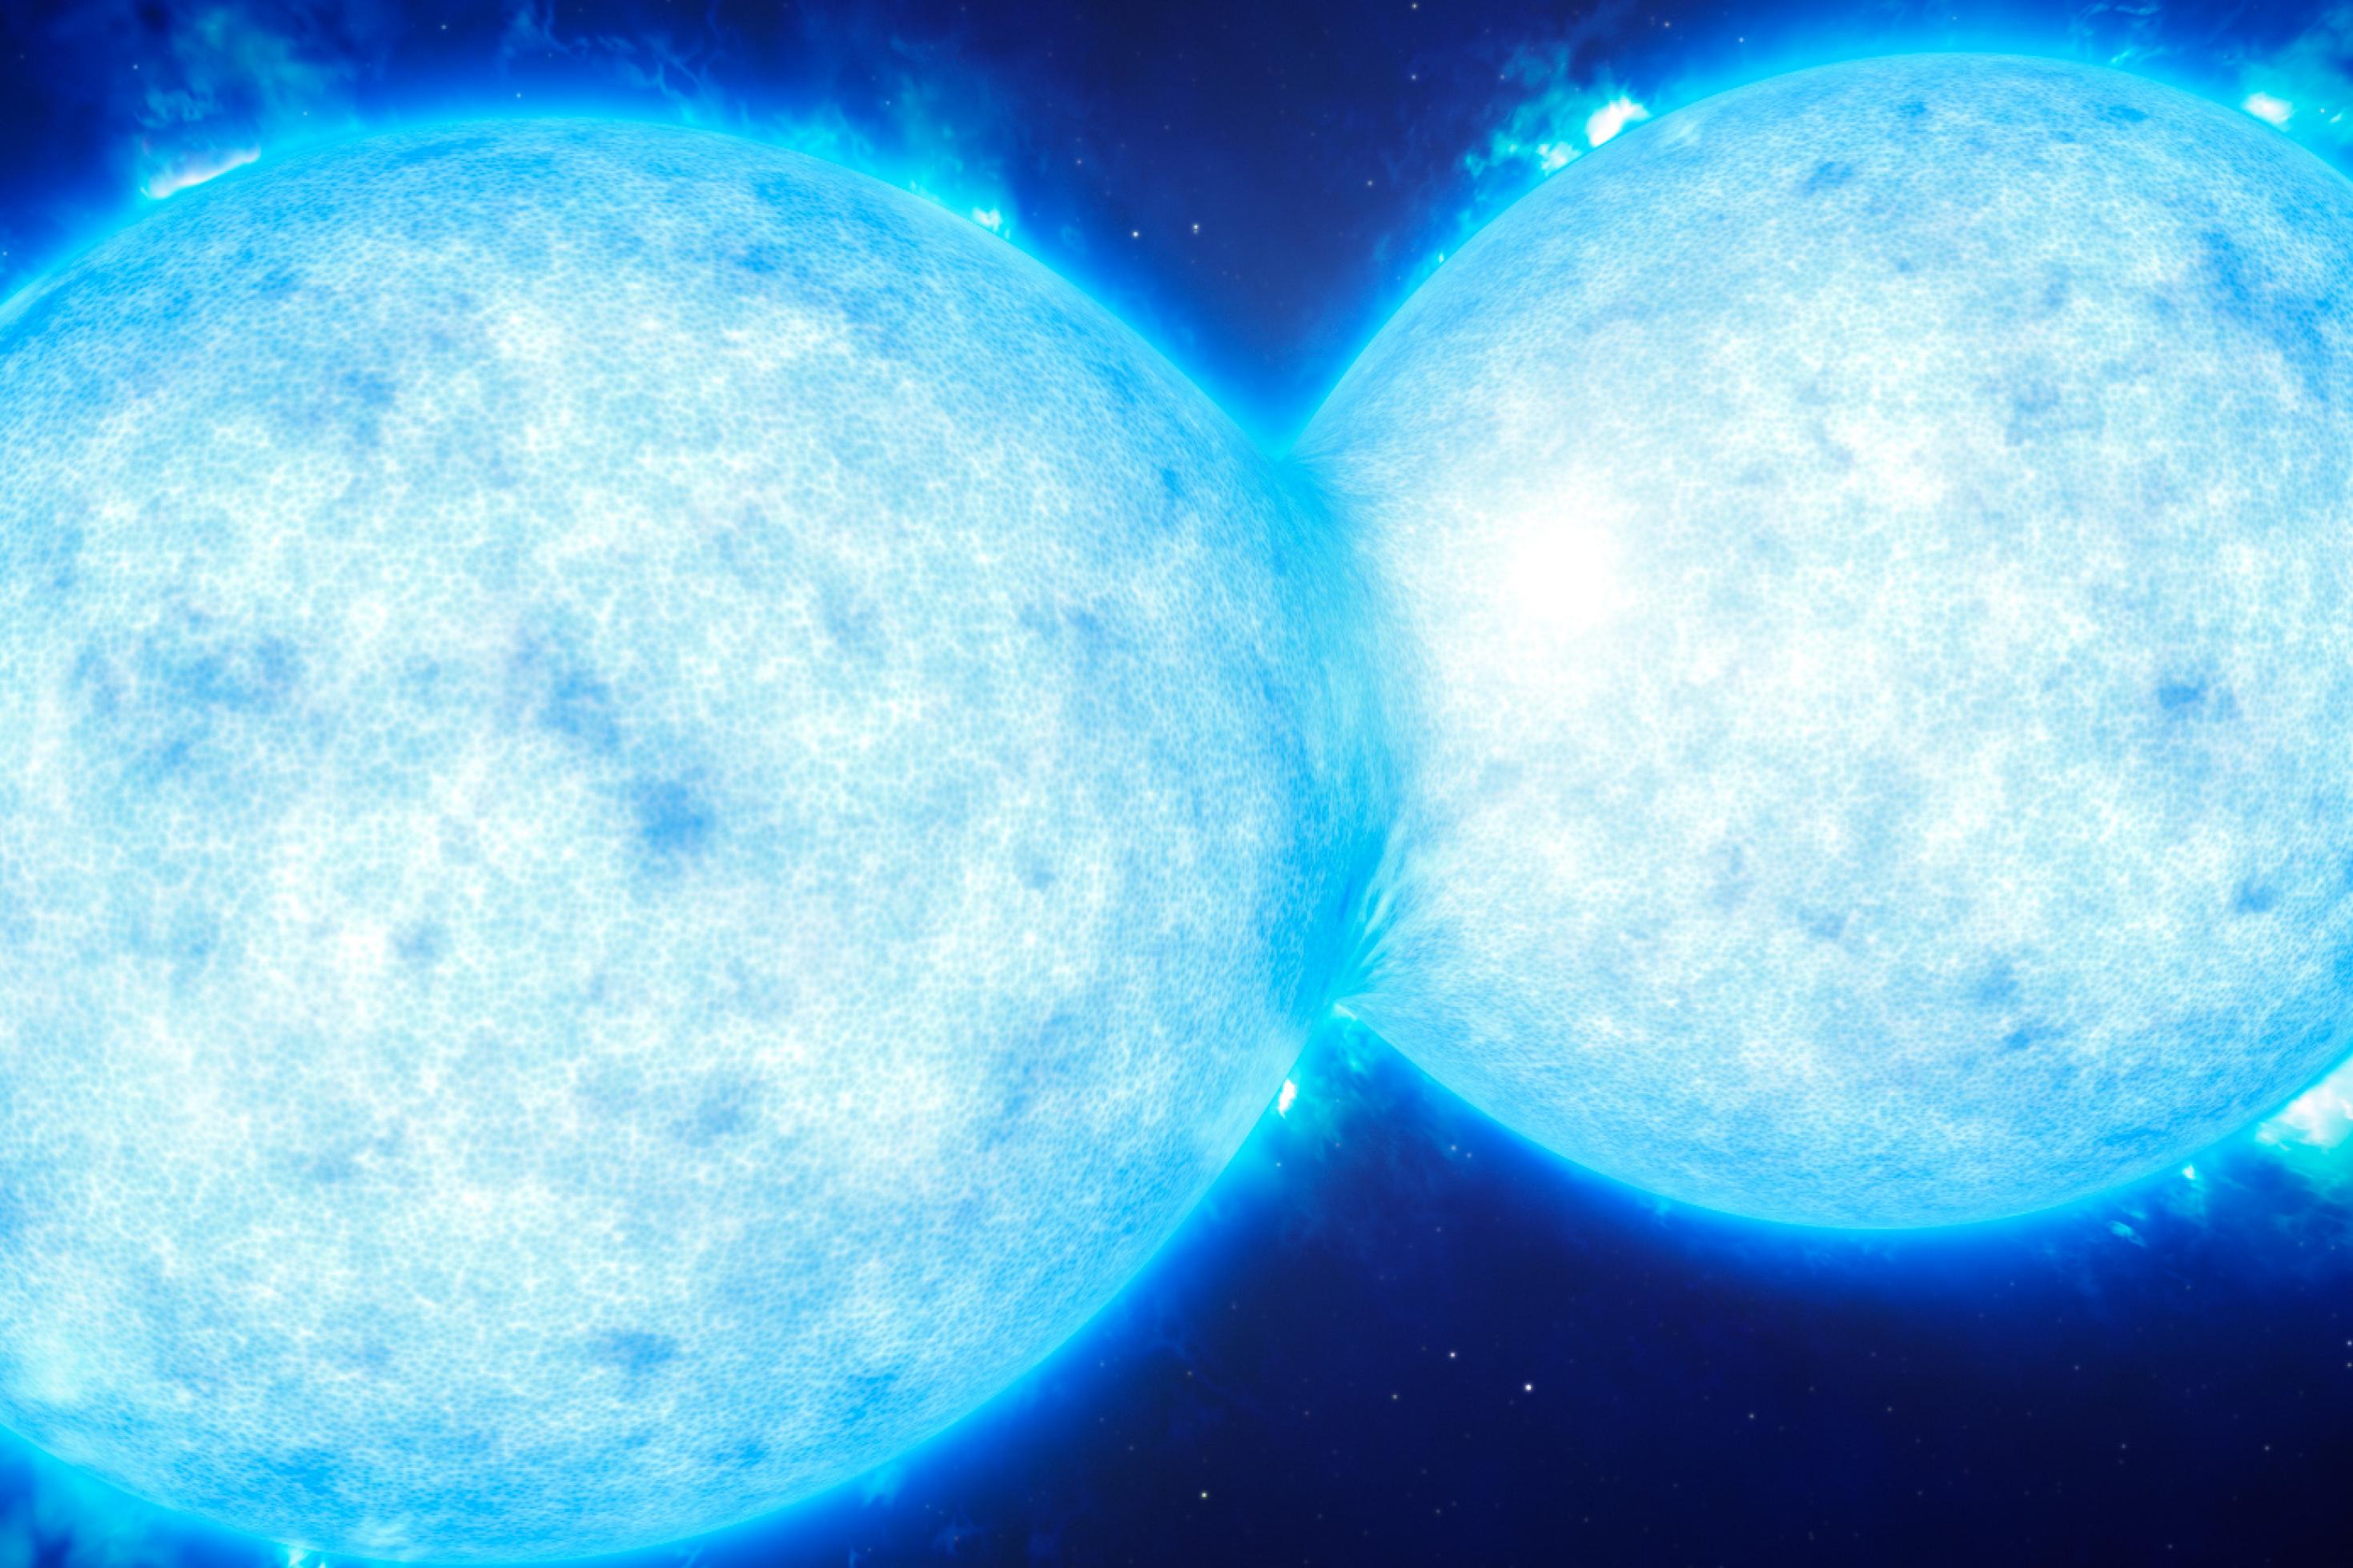 Fotorealistische Grafik zweier sehr blauer Sterne im All, mit körniger Oberfläche und Eruptionen am Rand. Die zwei Sterne berühren sich.